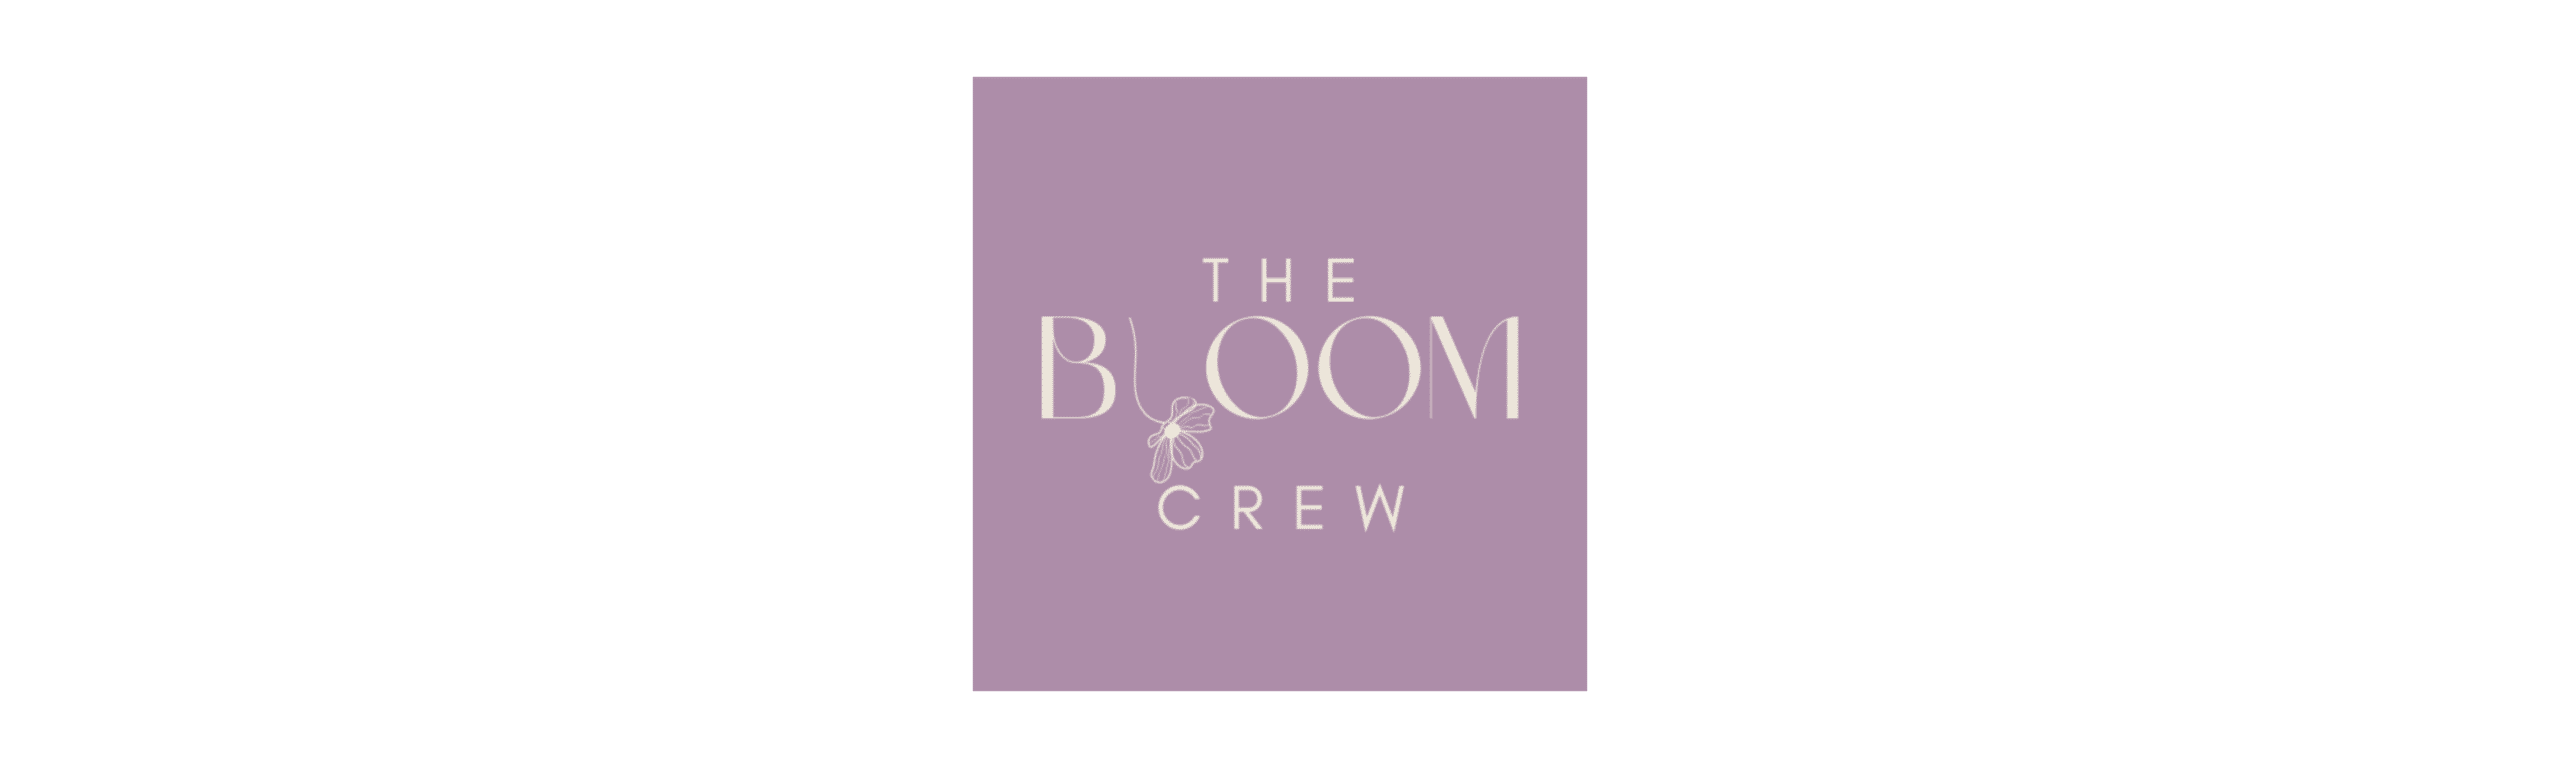 the bloom crew